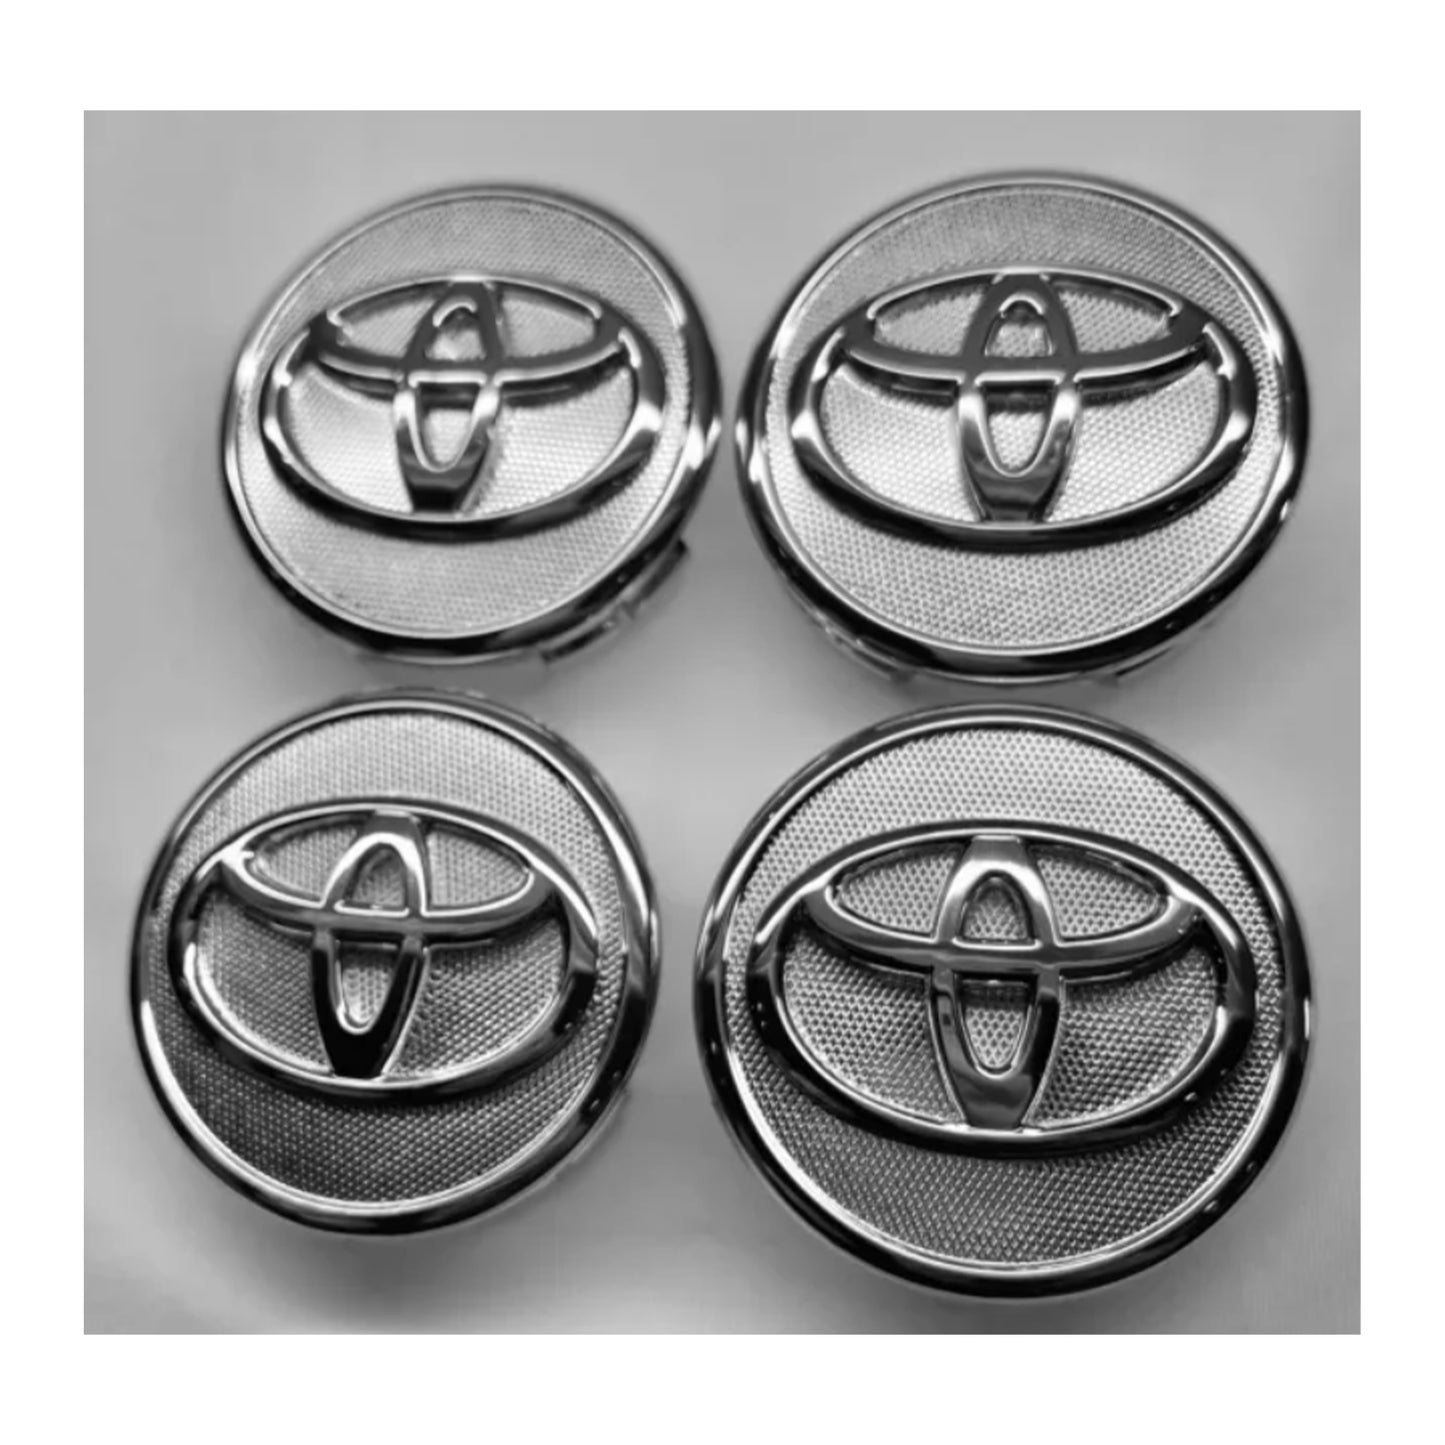 4x Toyota Wheel Rim Rims Center Hub Cap Caps Chrome Logo 57mm Prius Corolla